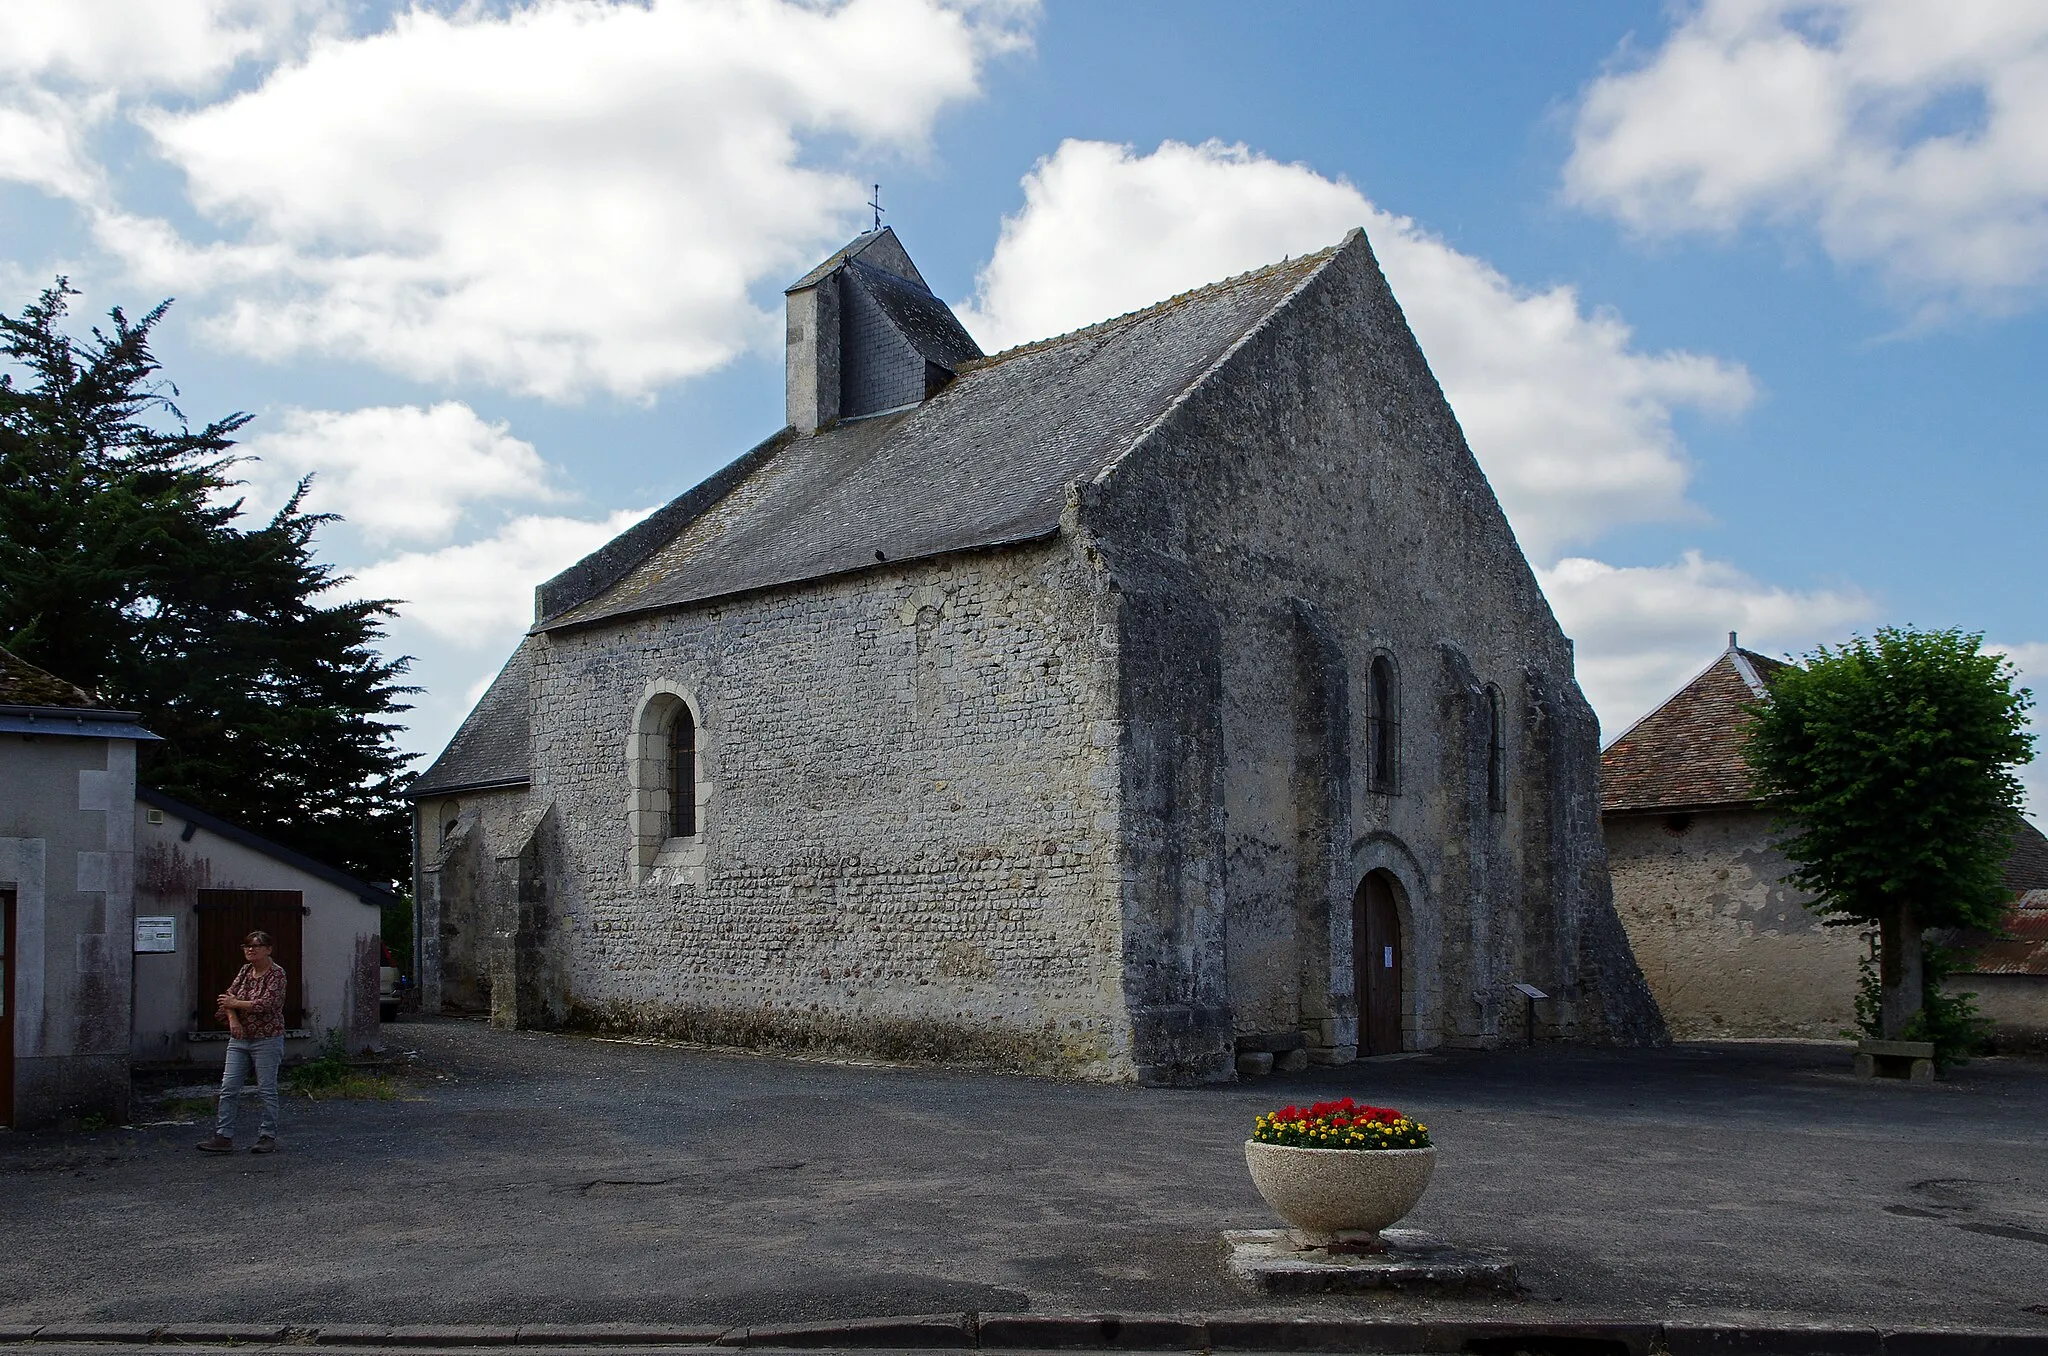 Photo showing: Avrillé-les-Ponceaux (Indre-et-Loire)
Eglise Saint-Symphorien-les-Ponceaux (XIe, XIIe siècles)
Il s'agit de l'ancienne église paroissiale de Saint-Symphorien-les-Ponceaux, commune supprimée et réunie à celle d'Avrillé en 1817. La nouvelle commune s'appelera Avrillé-les-Ponceaux à partir de 1920.
La paroisse, qui faisait partie de l'Anjou, était connue en 887 sous le nom de "Sanctus Symphorianus de Porcellis", autrement dit Saint-Symphorien des porcs*. Le village se nommera Saint-Symphorien de Porceaulx au Moyen-Âge tardif.
L'édifice se compose d'une nef carrée, en petit appareil, du XIe siècle, et d'un choeur également carré du XIIe.  La façade a été refaite au XIIe siècle, et est percée d'un portail en plein cintre, de style roman, de la première moitié du XIIe siècle, dont le rouleau est circonscrit par une archivolte moulurée de chevrons. Le mur de refend supporte un clocher pignon en forme de bretèche, à deux arcades. La nef et le choeur sont séparés par une arcade en plein cintre.
L'intérieur comprend un escalier droit en pierre, appuyé contre le mur sud, qui accède aux combles.
Adossée à l'escalier, une statue de Sainte Eméranceµ (Emérence, Emérencie, Emérentienne, etc), sainte vénérée en Anjou. Elle  porte la palme du martyre, ayant été lapidée en 304 près du tombeau de sa soeur sainte Agnès.
En plâtre polychrome, une statue se saint Gilles datant du XVIe siècle. Dédiée à Saint Gilles*, l'église était certainement à l'origine une chapelle.

Le porc médiéval est un animal de la forêt, il s'y nourrit de racines, d’herbes, de ramilles, de truffes ou de champignons,de pommes et poires sauvages, de baies, noix, châtaignes et surtout faines et glands.  Au Xe siècle, il faut environ 150 hectares pour nourrir une centaine de porcs. Saint Symphorien étant un ermite de la forêt, peut-on y voir un rapport? Émérentienne était la fille de la nourrice de sainte Agnès. Convertie au christianisme, elle assista au martyre de sainte Agnès. Allant prier chaque jour sur sa tombe, elle fut  reconnue comme chrétienne, et lapidée en 304. En Anjou, un dicton invoque "Ste Emerance qui guérit du mal de la panse". D'origine grecque, Gilles (Aegidius) vécut en ermite dans les forêts près de Nîmes dans le Gard où il fonda une abbaye qui prit son nom. www.patrimoine-religieux.fr/eglises_edifices/37-Indre-et-...

nominis.cef.fr/contenus/saint/9933/Sainte-Emerentienne.html